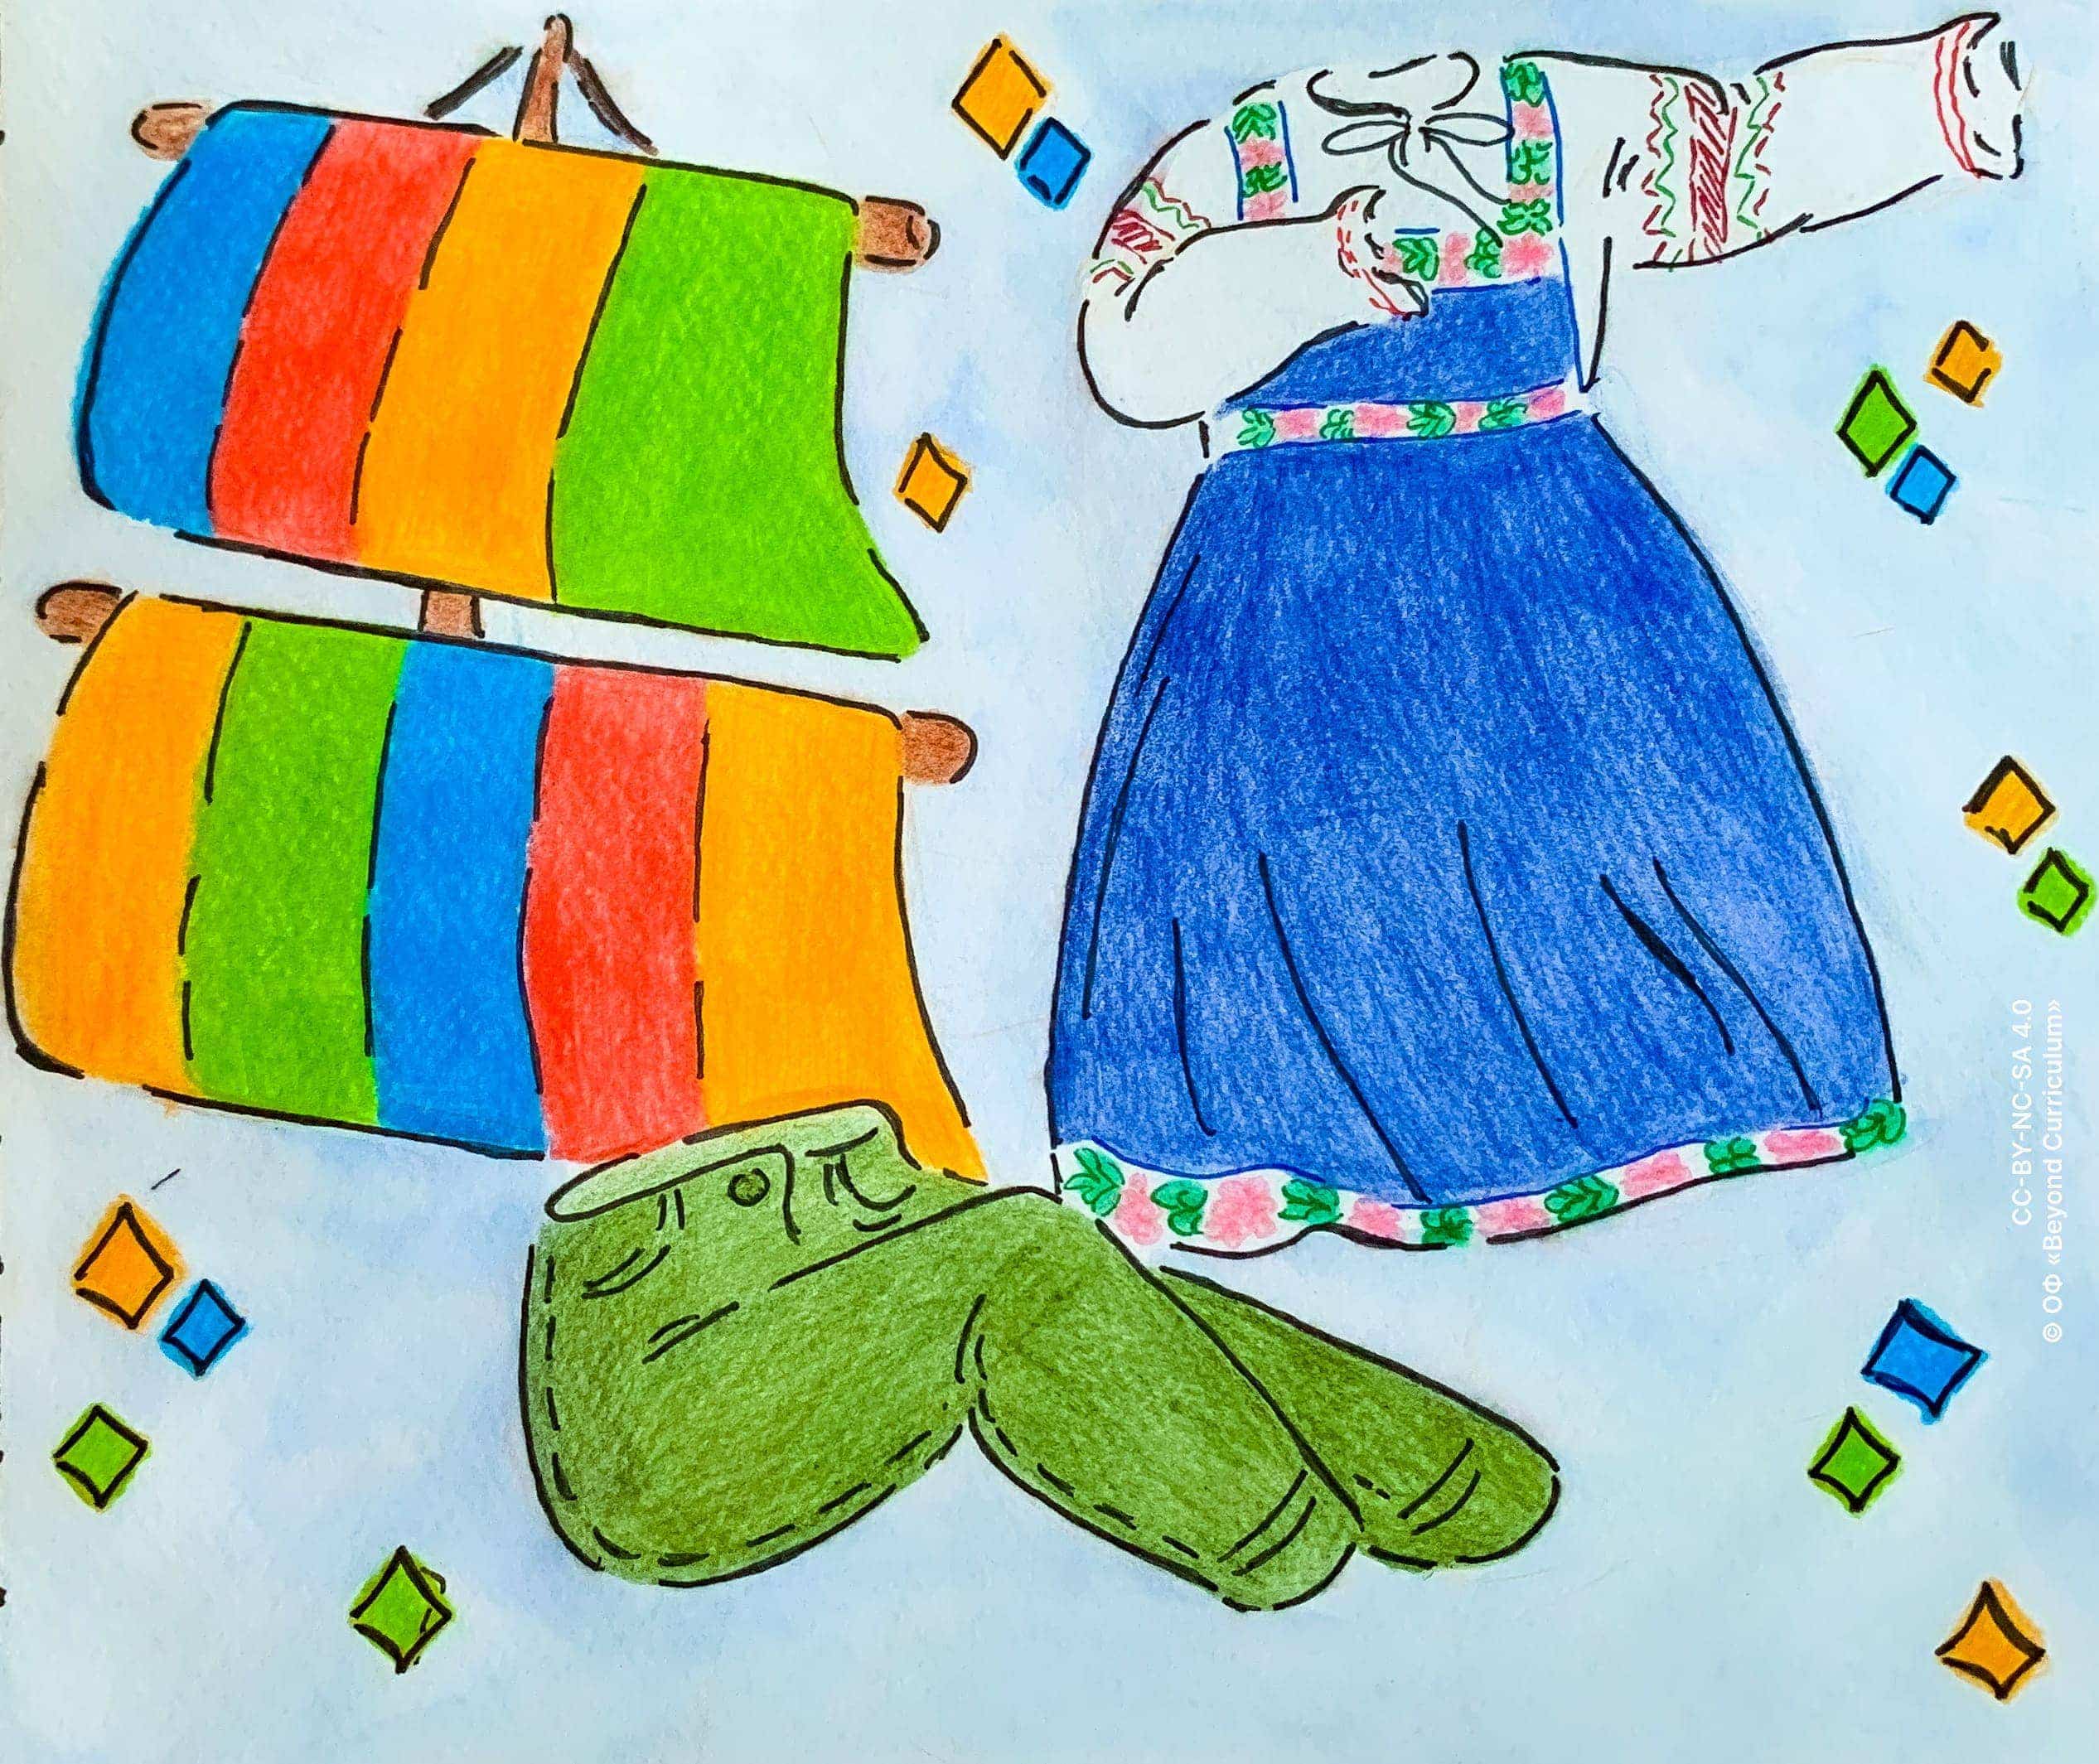 Изображены (слева) парус в вертикальную полоску из четырех цветов, (справа) льняное общевосточноевропейское традиционное платье с белым верхом, синим низом, и орнаментами, и (снизу) зеленые джинсы в позе сидящего человека.